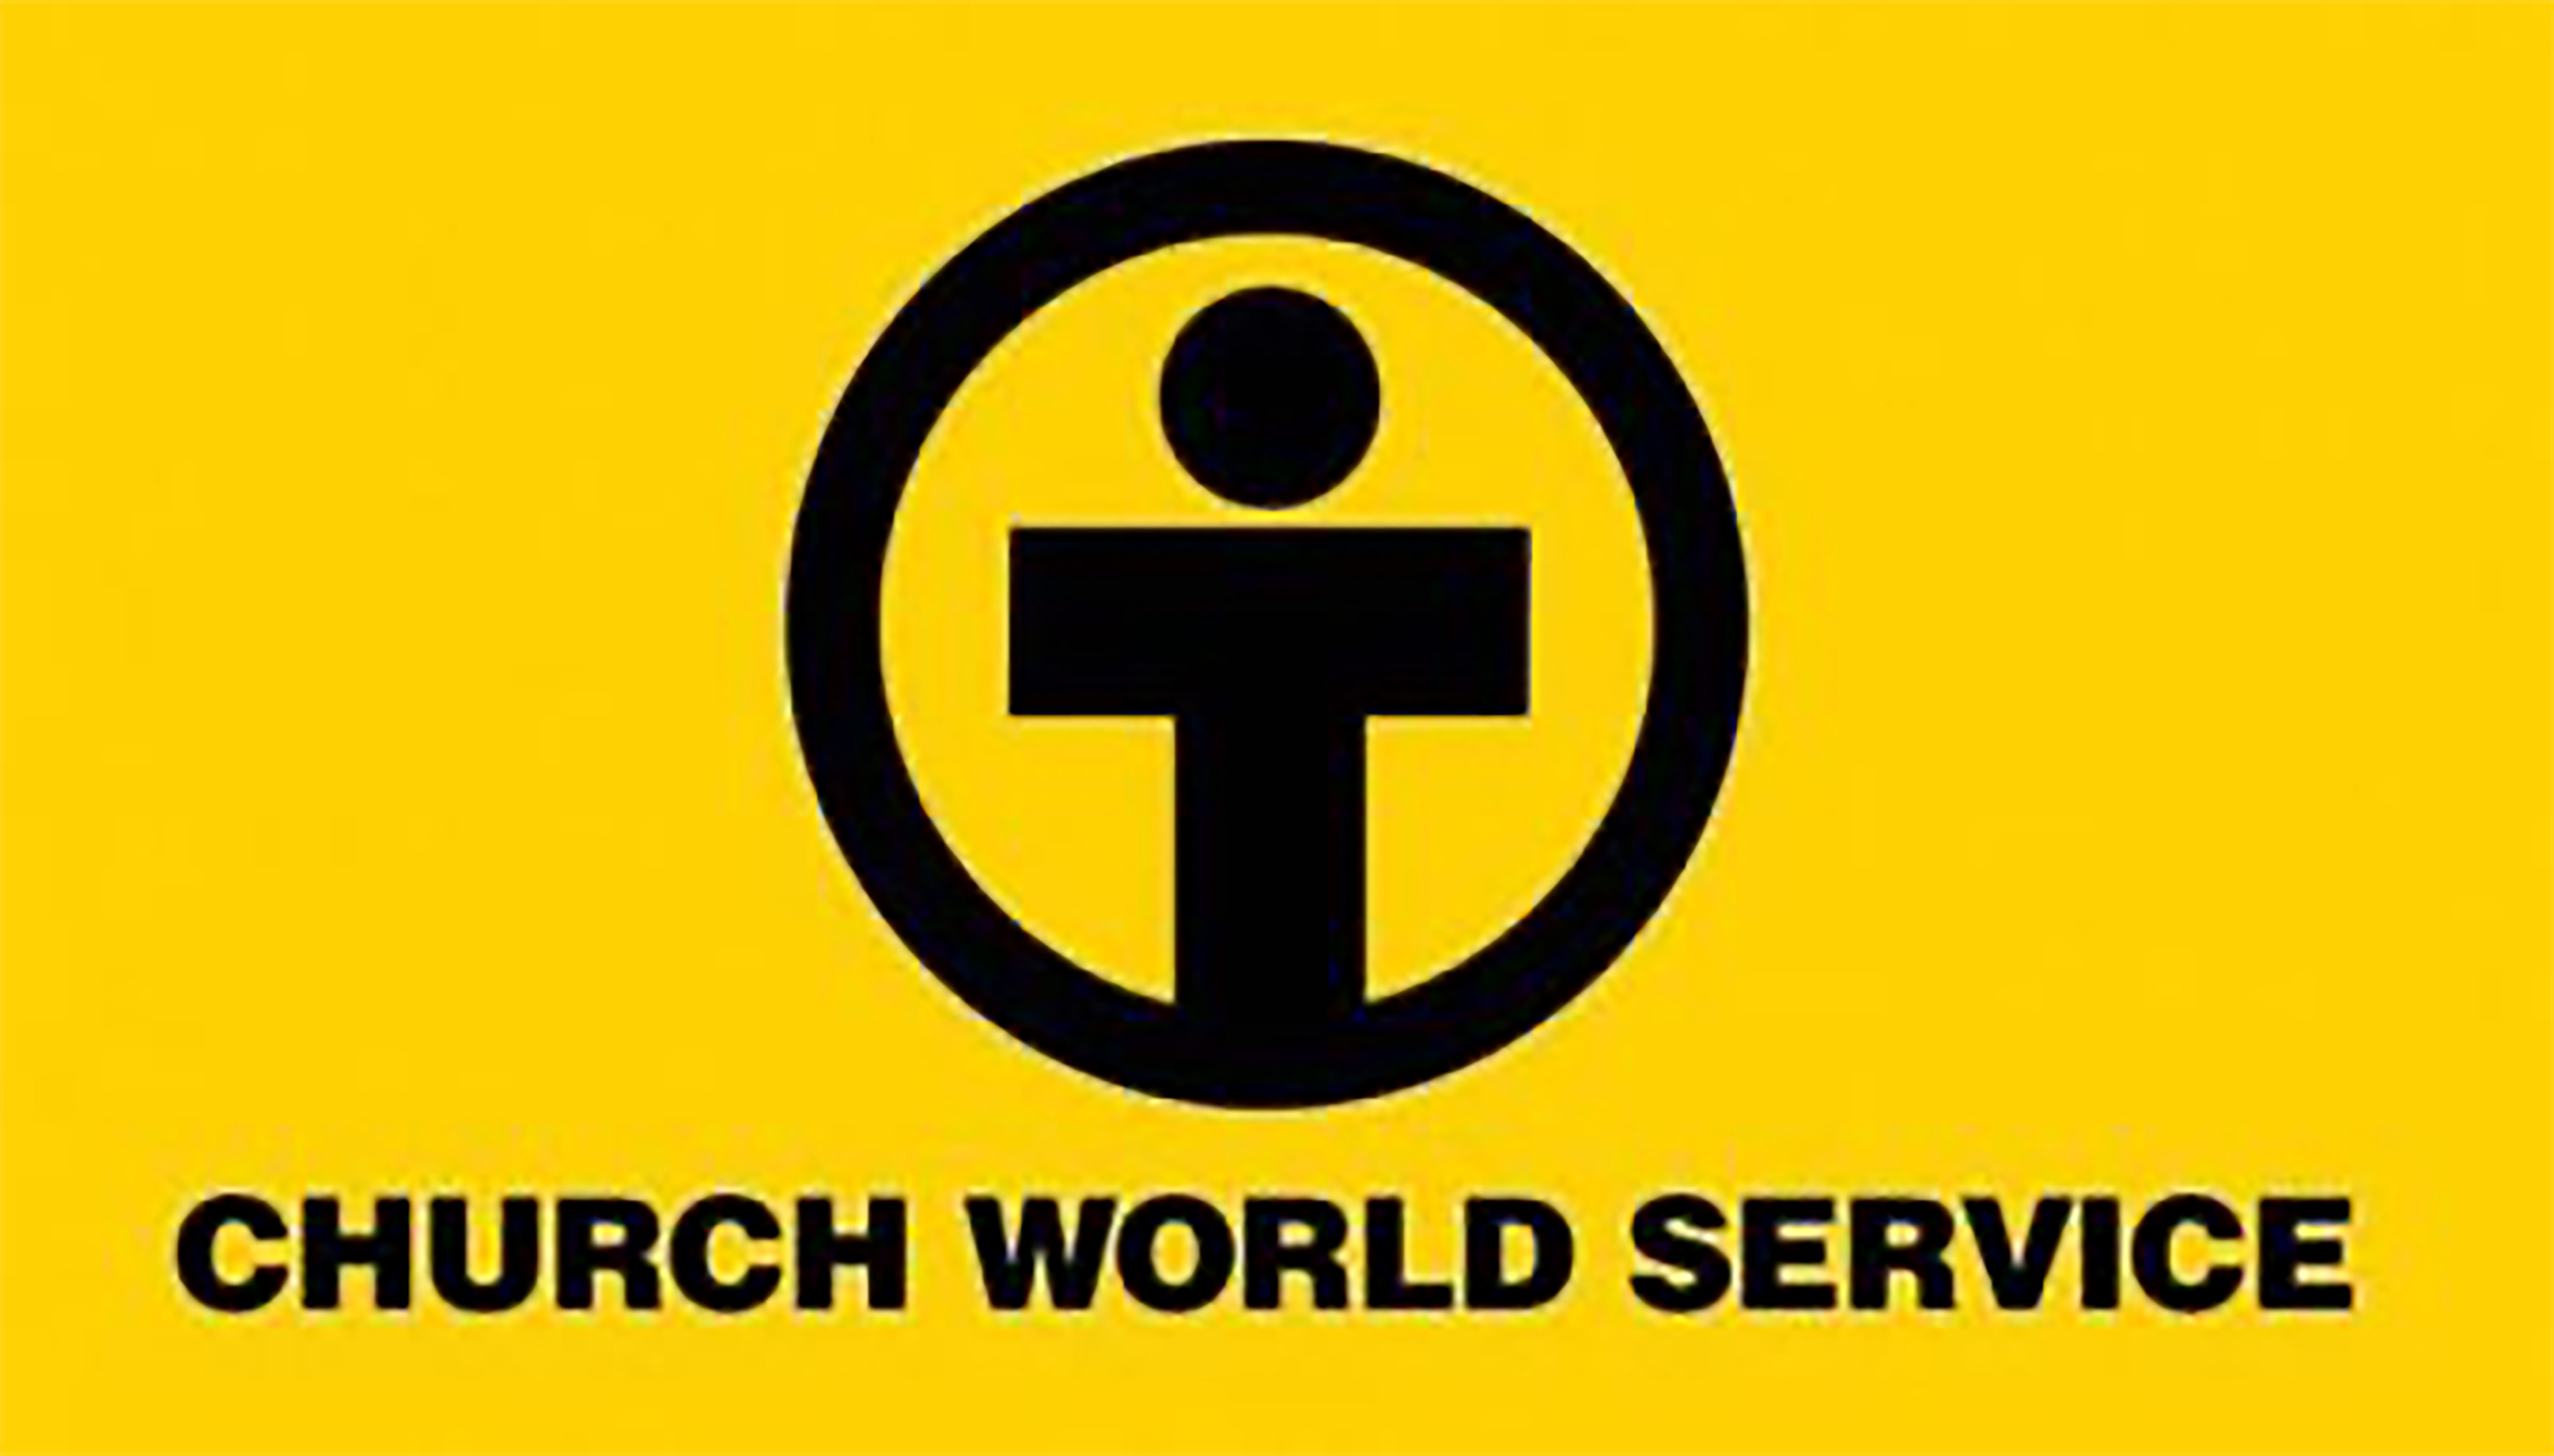 El Servicio Mundial de Iglesias (Church World Service -CWS), es una agencia humanitaria de apoyo a programas de promoción humana, ayuda humanitaria y a refugiados/as. Gráfico cortesía del CWS.